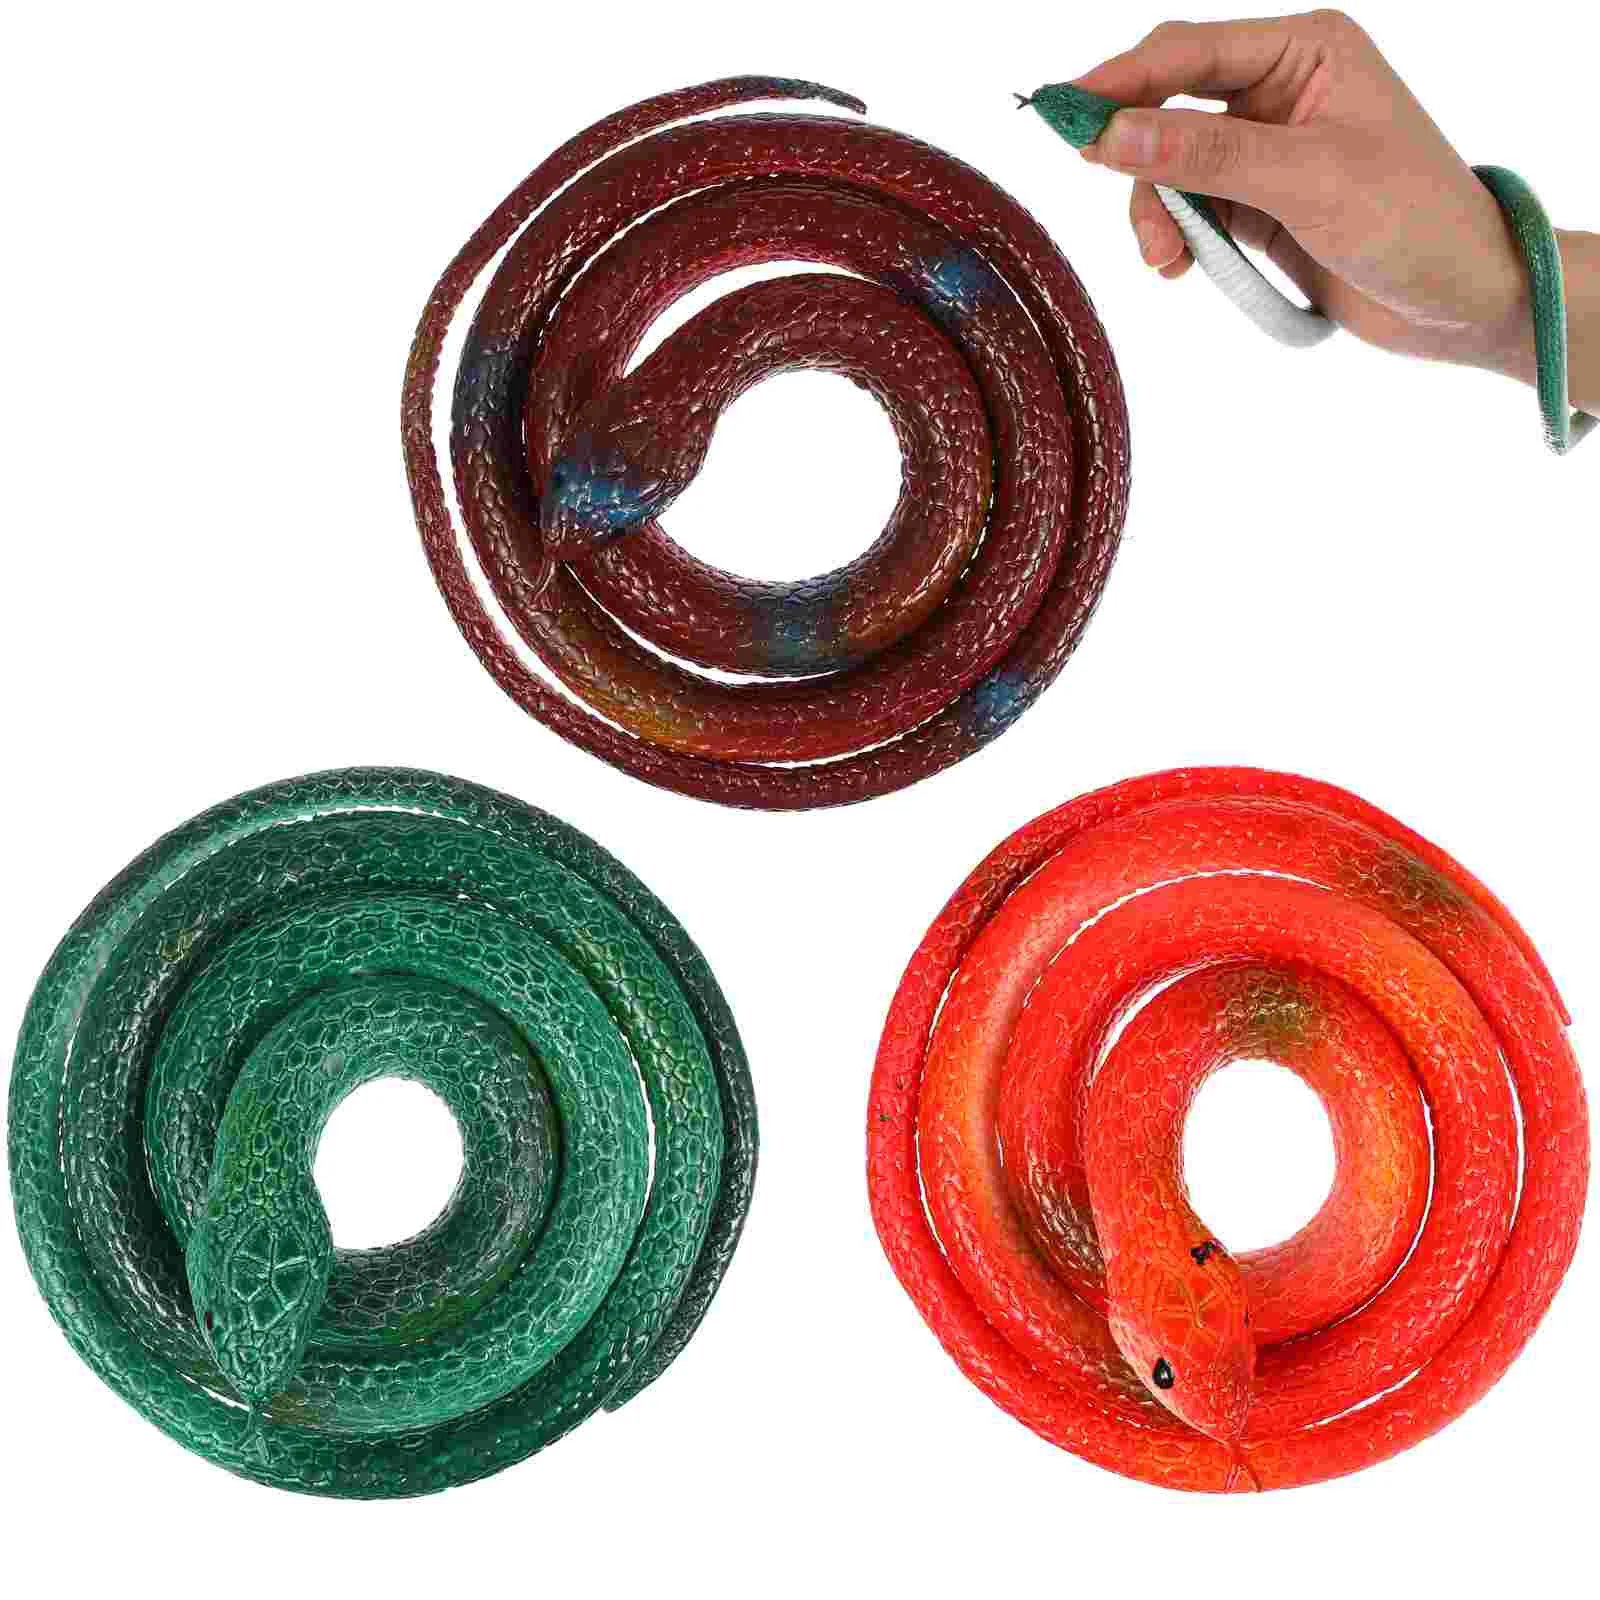 

6 шт., 75 см, резиновые змеи, искусственная игрушка для розыгрыша, искусственная игрушка для детей (случайный стиль)